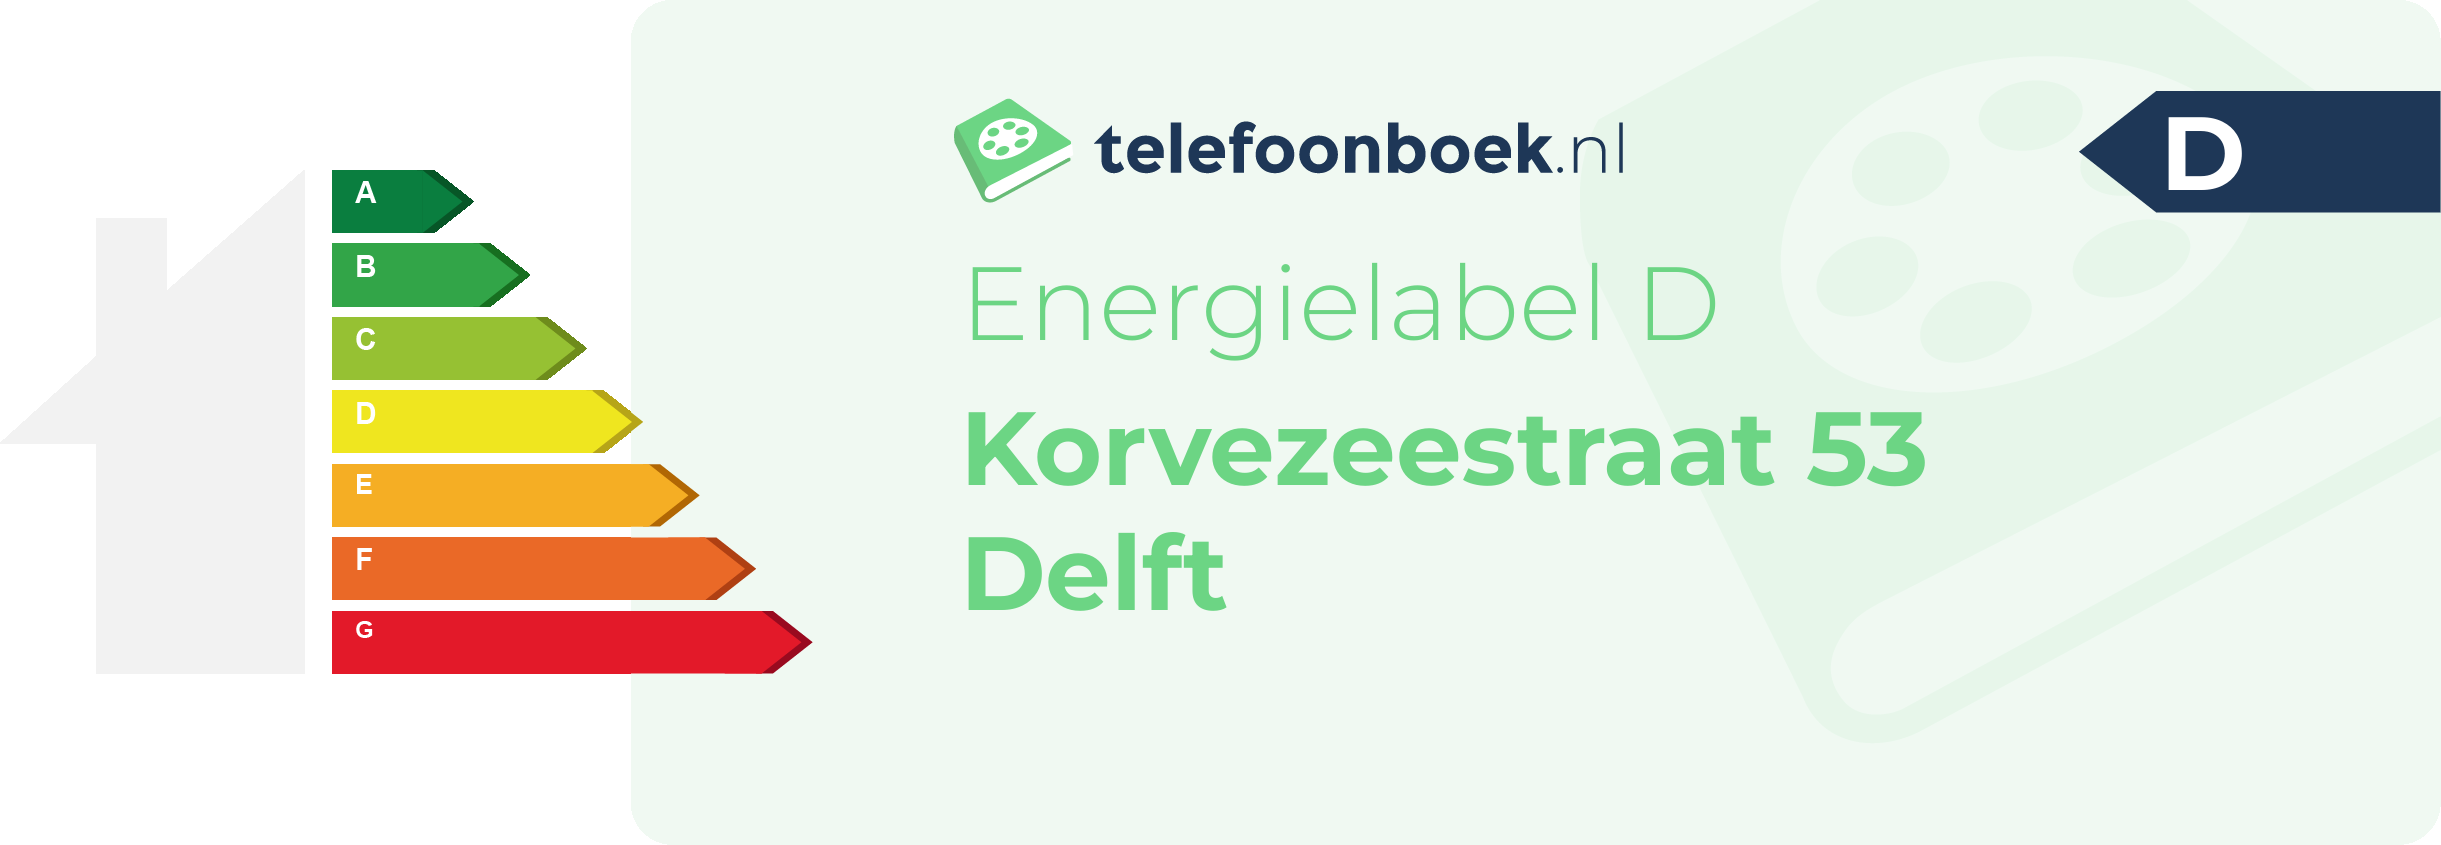 Energielabel Korvezeestraat 53 Delft